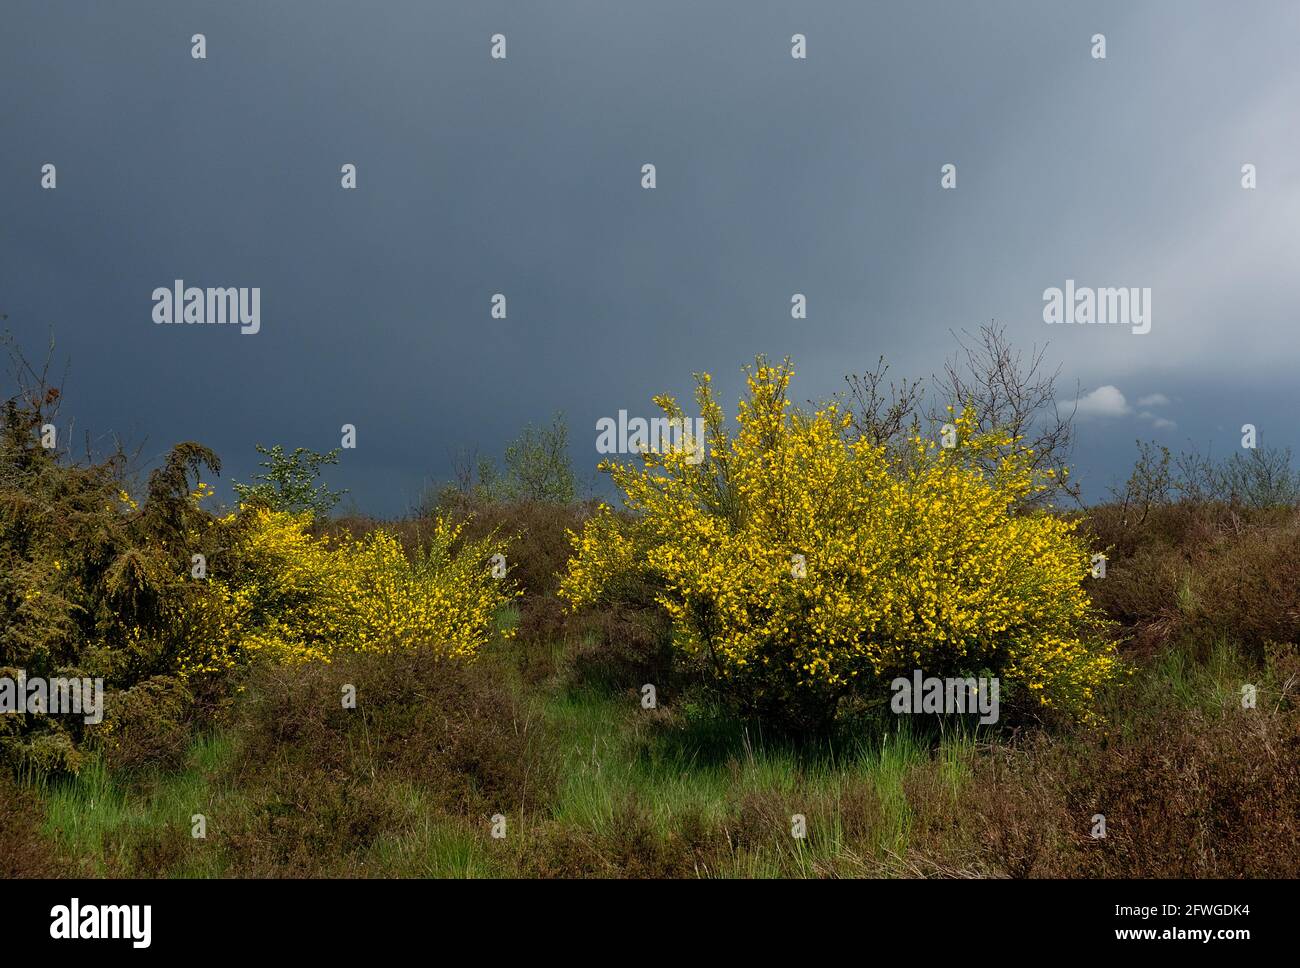 Blühend Gemeiner Besen auf dem Heideland stehen die gelb-sonnenbeschienenen Blüten stark im Kontrast zu den dunklen Regenwolken im Hintergrund Stockfoto